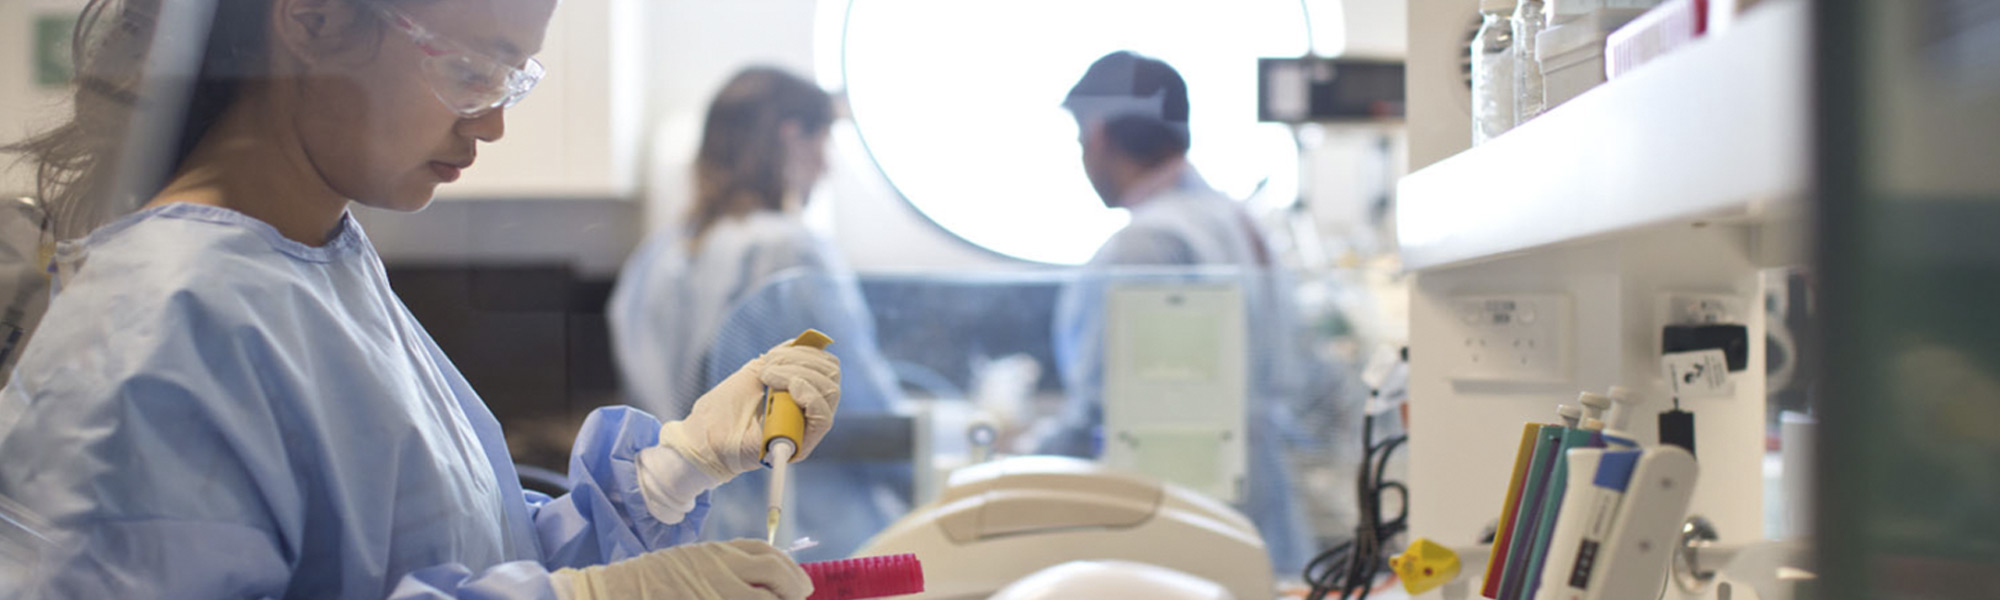 照片中，一个女孩戴着护目镜，穿着蓝色的手术服，在实验室里摆弄设备。背景中另外两名穿着工作服的学生的照片焦点不清。